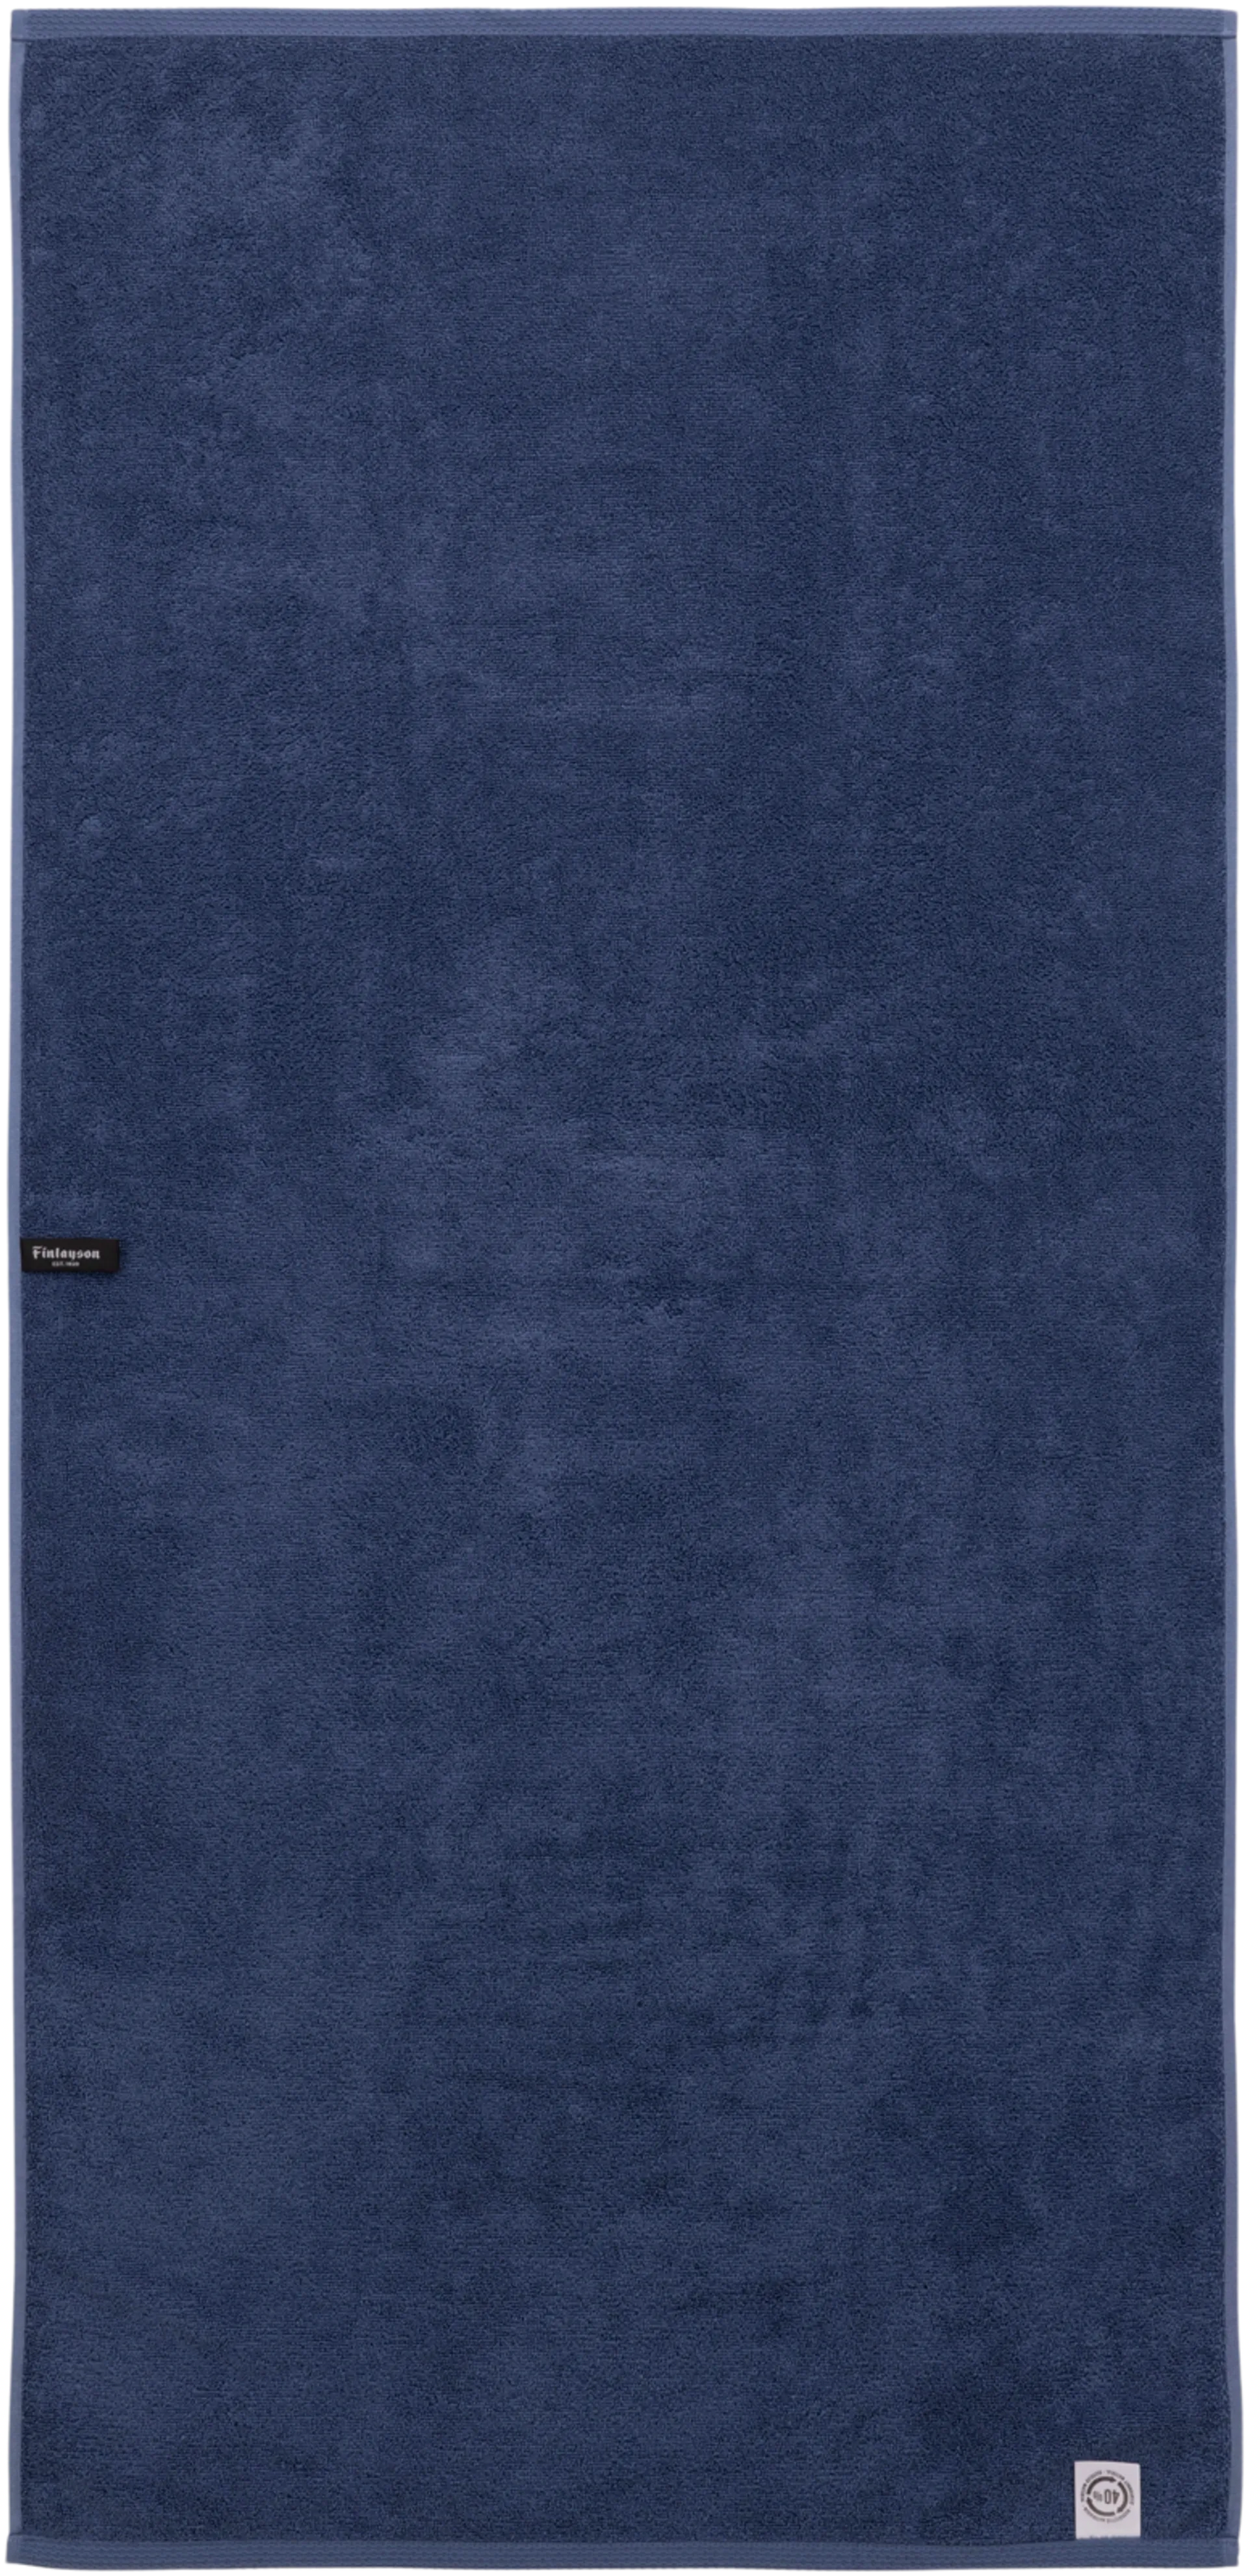 Finlayson iso kylpypyyhe Mukava 90x180 cm, tummansininen - 2